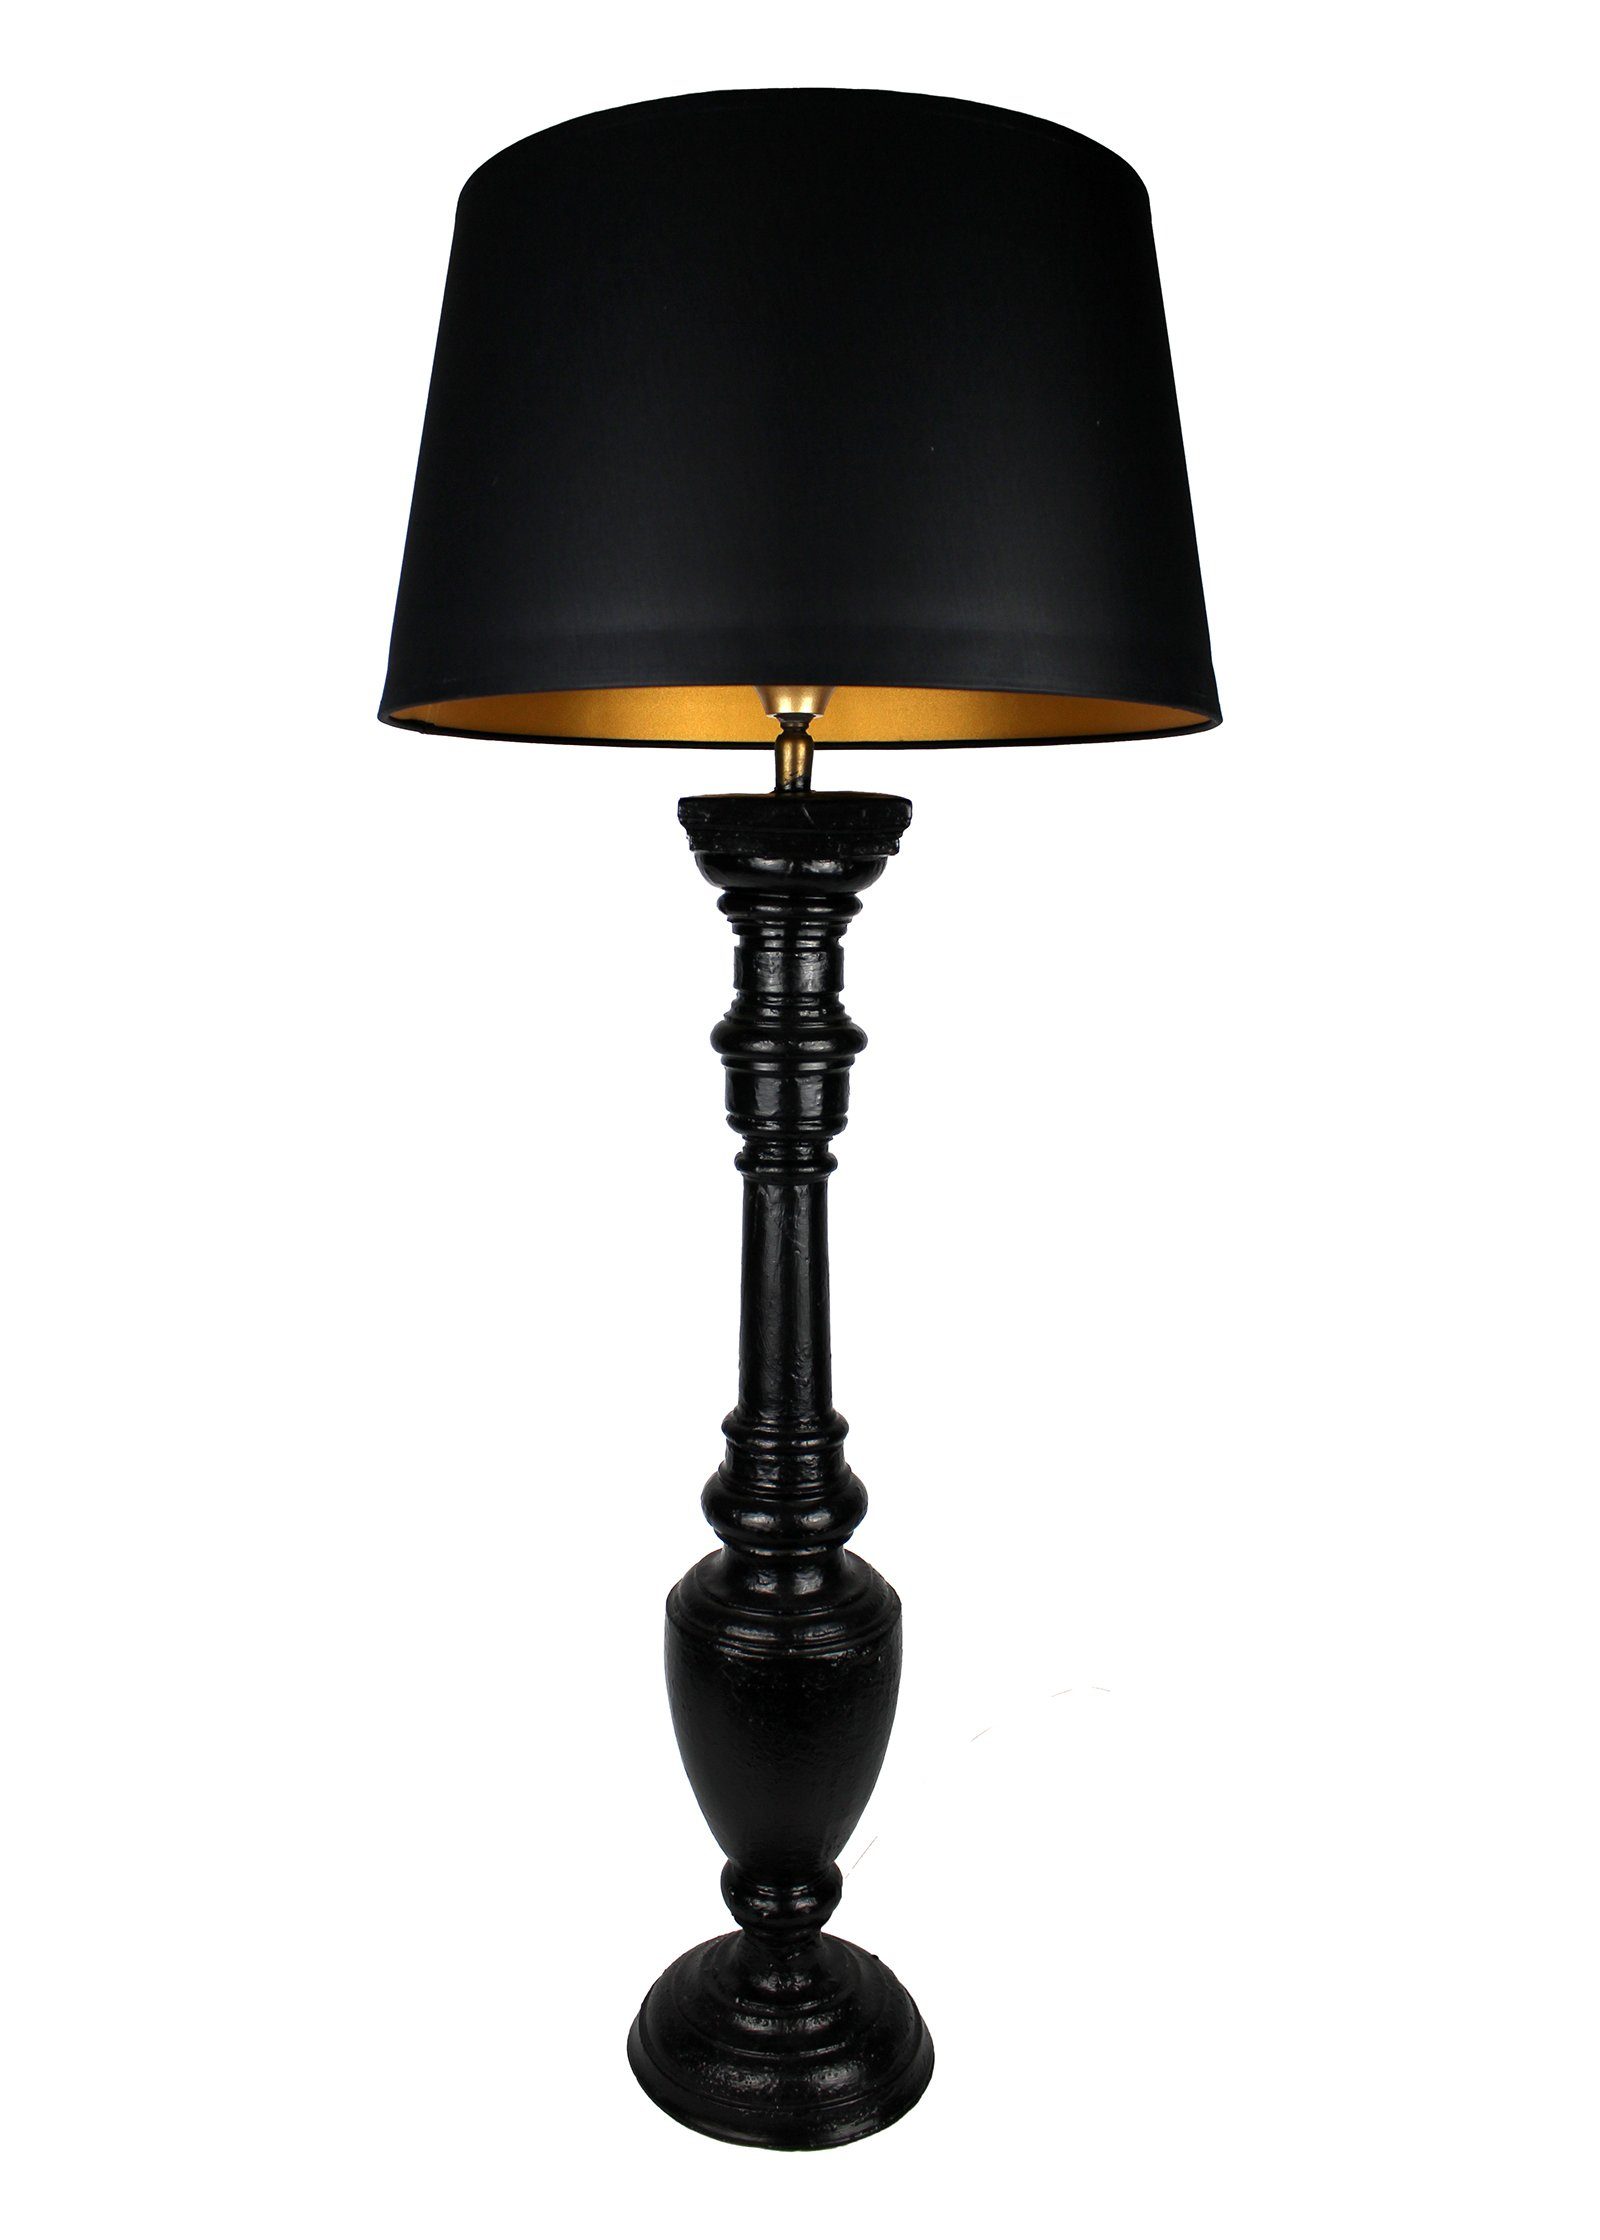 Tischleuchte gedrechselt lackiert Home schmal Signature schwarz handgefertigt Collection in warmweiß, Tischlampe ohne Lampenschirm, Holz Leuchtmittel, Italien mit